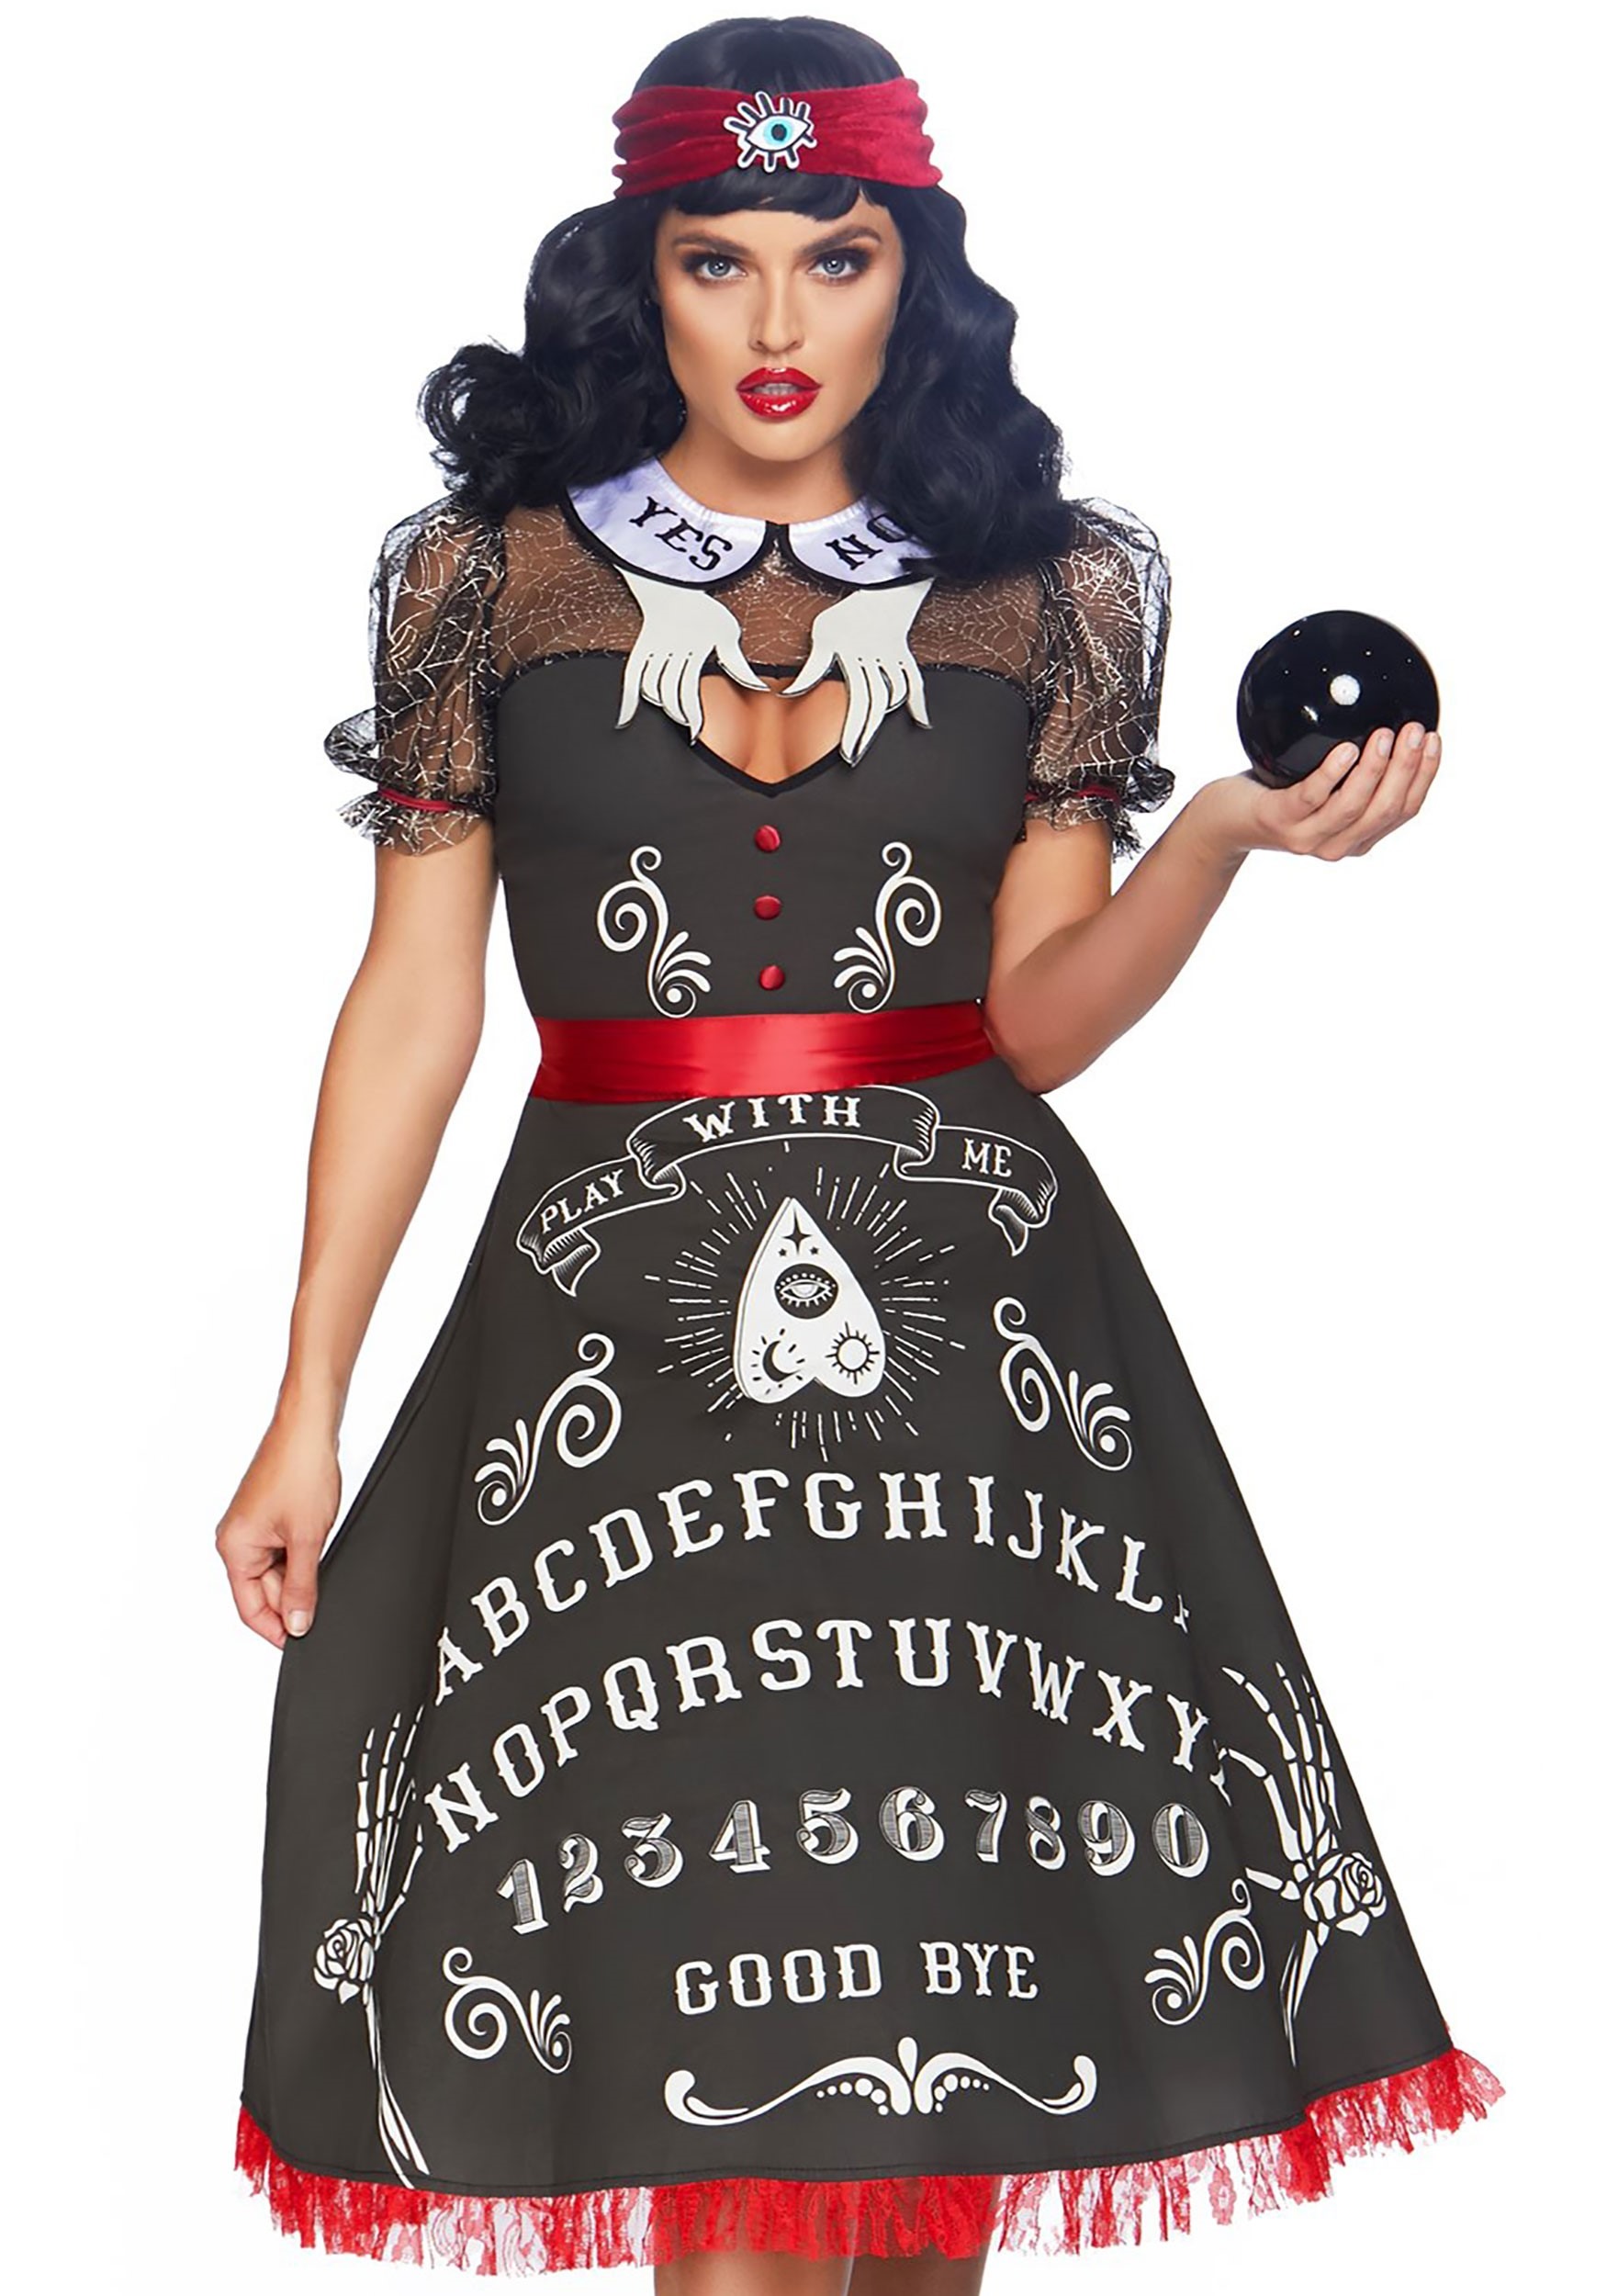 Photos - Fancy Dress MKW Leg Avenue Spooky Board Beauty Costume for Women Black/Red LE86812 